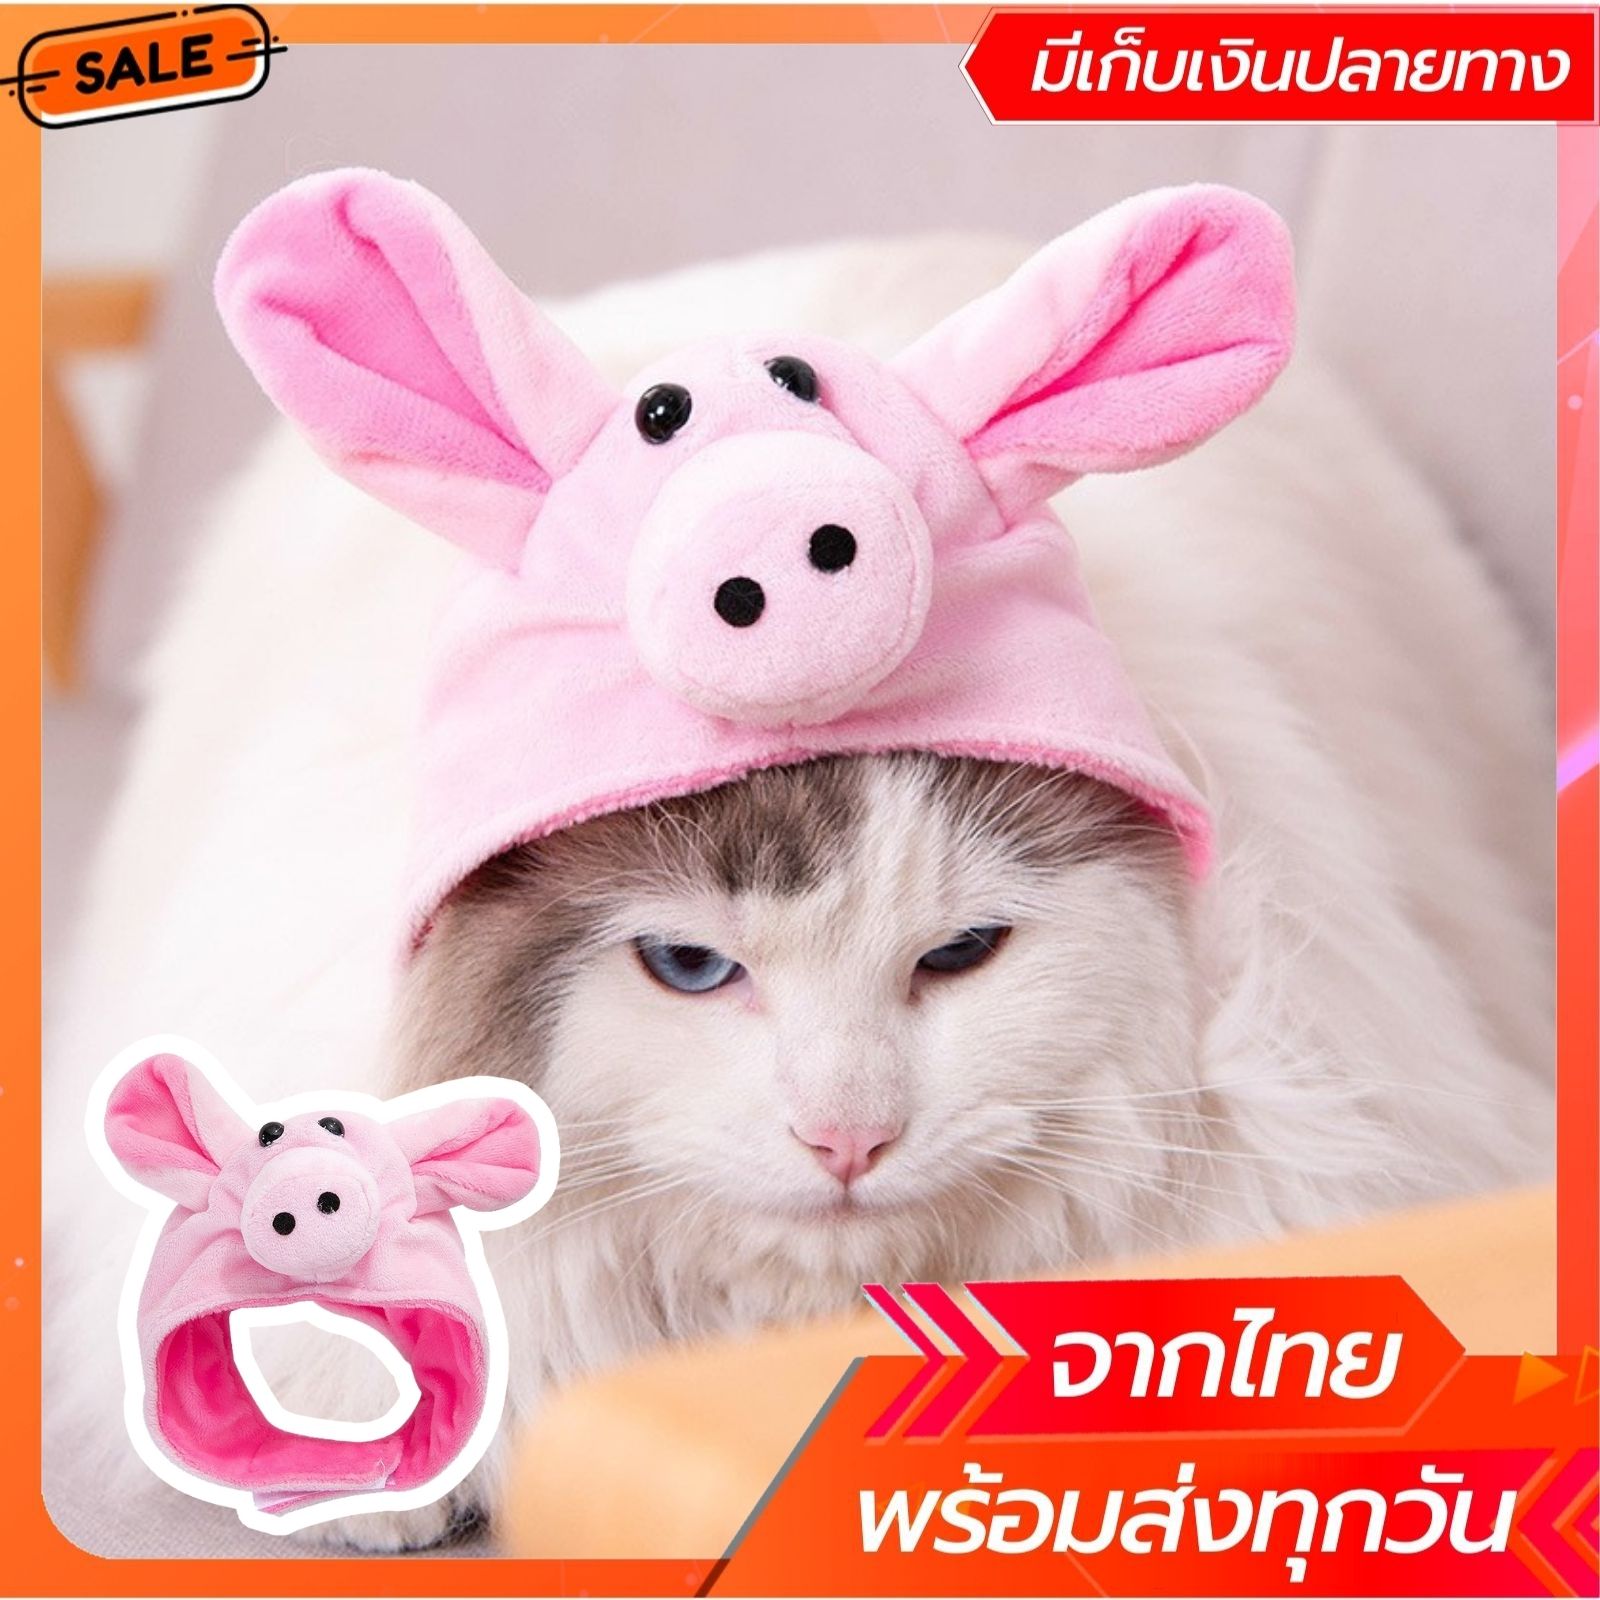 หมวกแมว หมวกหมา หมวกสุนัข หมวกแฟนซีหมา หมวกแฟนซี หมวกหมู พร้อมส่งจากไทย เก็บเงินปลายทางได้